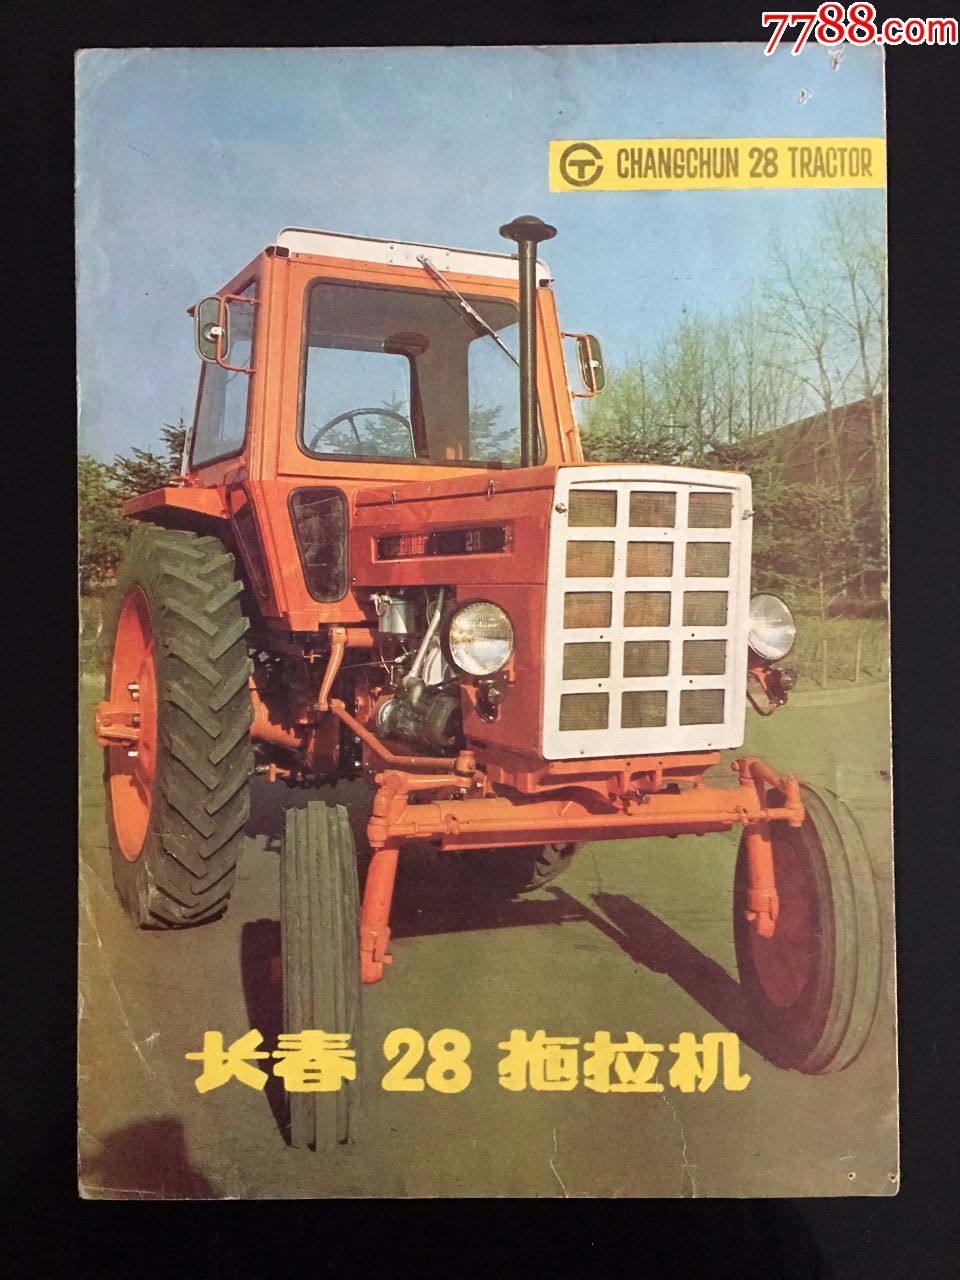 长春东方红28拖拉机出厂说明书(第二批,原车带蓬)